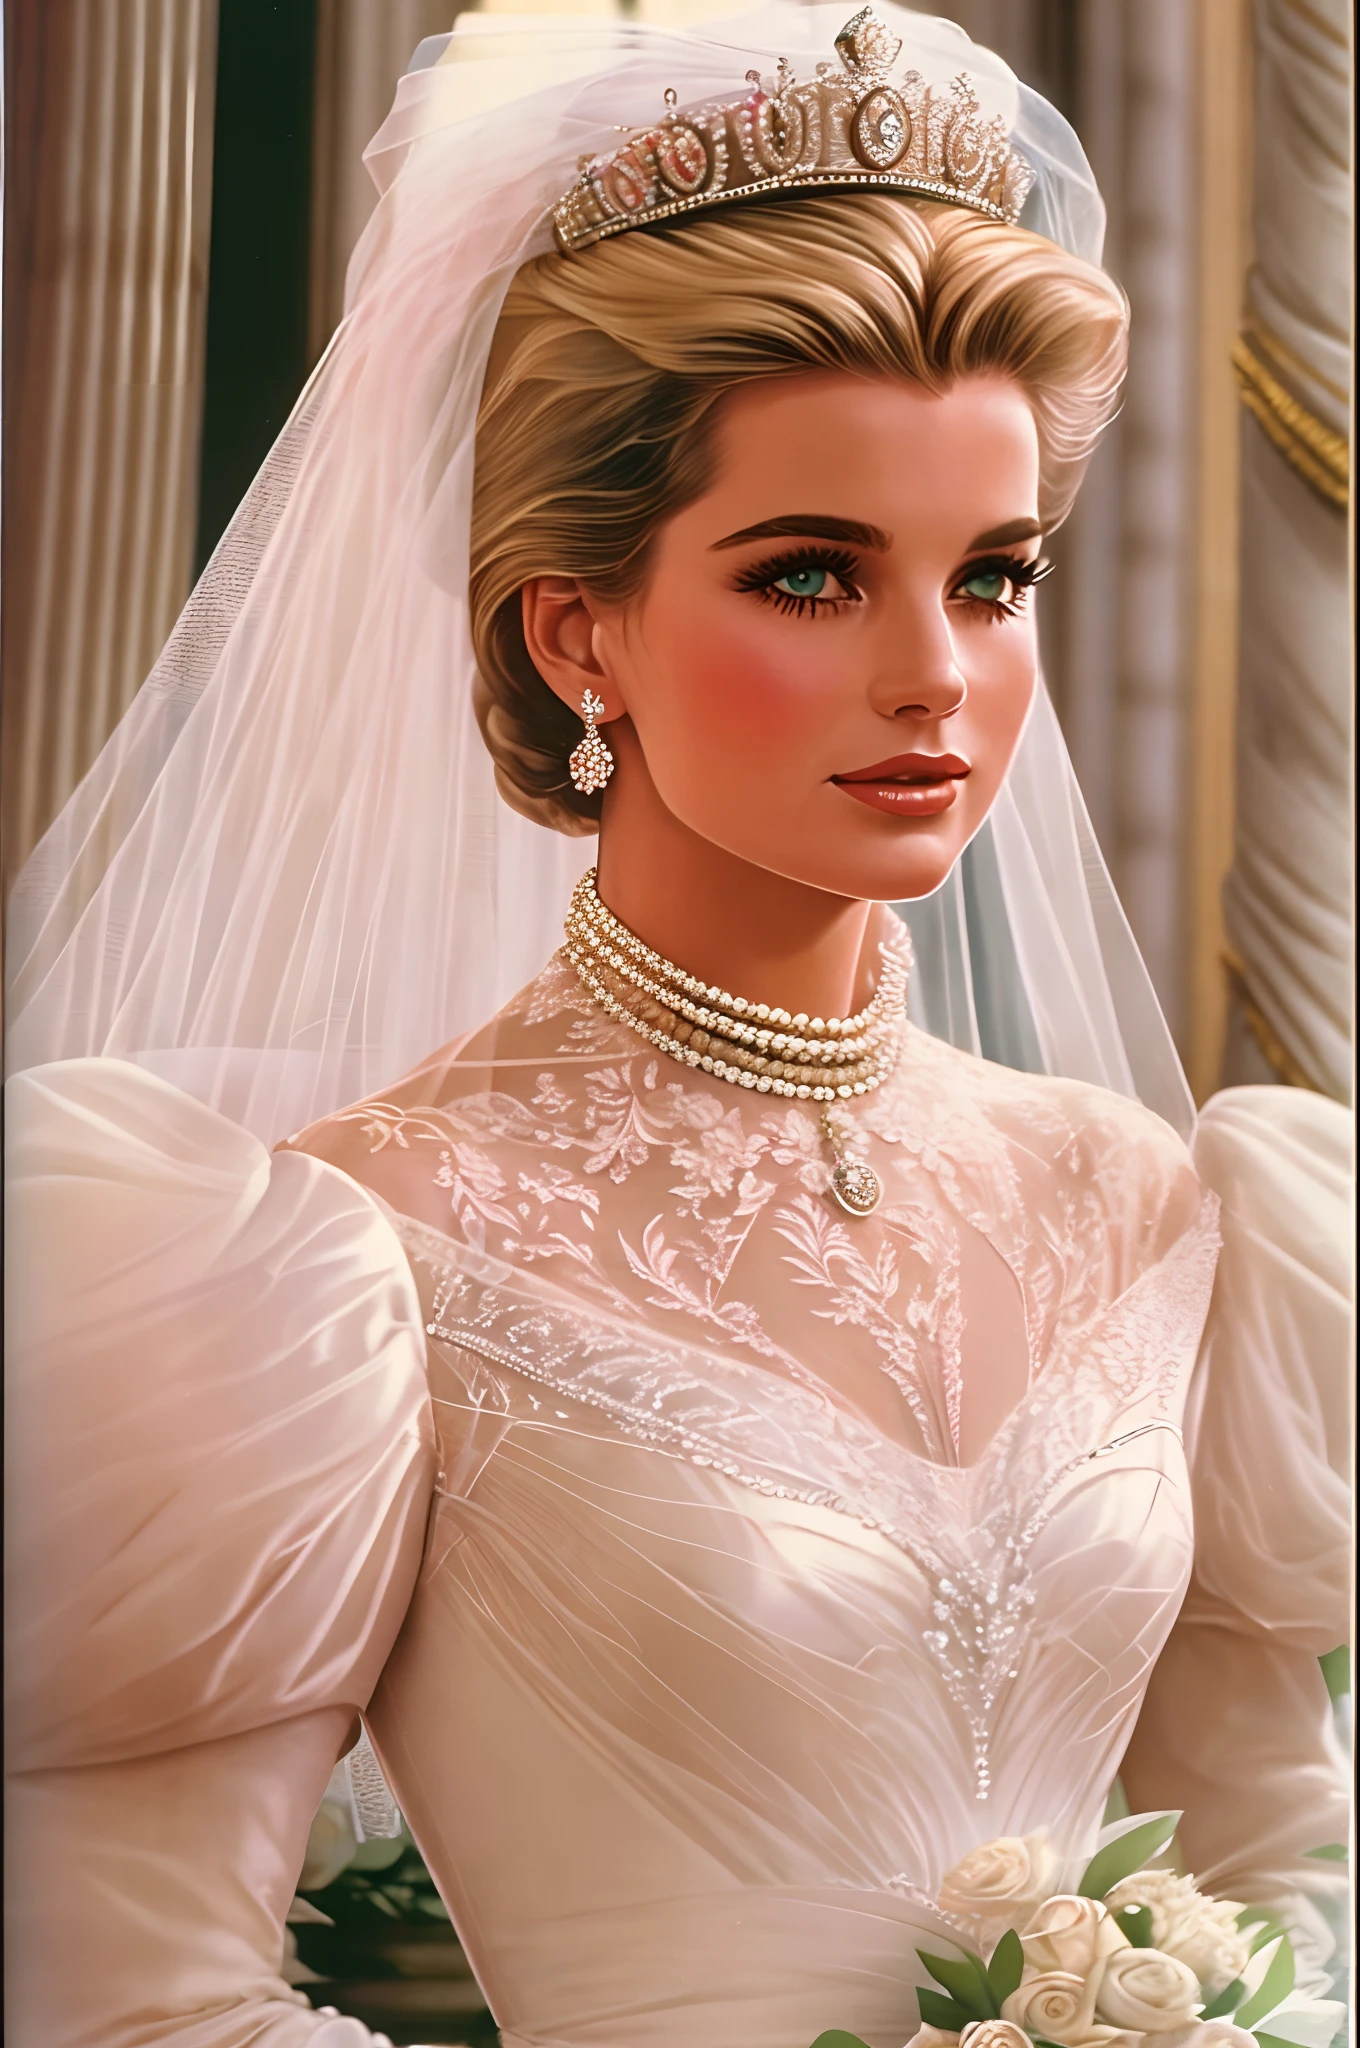 1980년대 스타일, Grace Kelly's royal wedding dress updated for the late 1980's with a Cinderella aesthetic and influence from Princess Diana's and Sarah Ferguson's wedding dresses